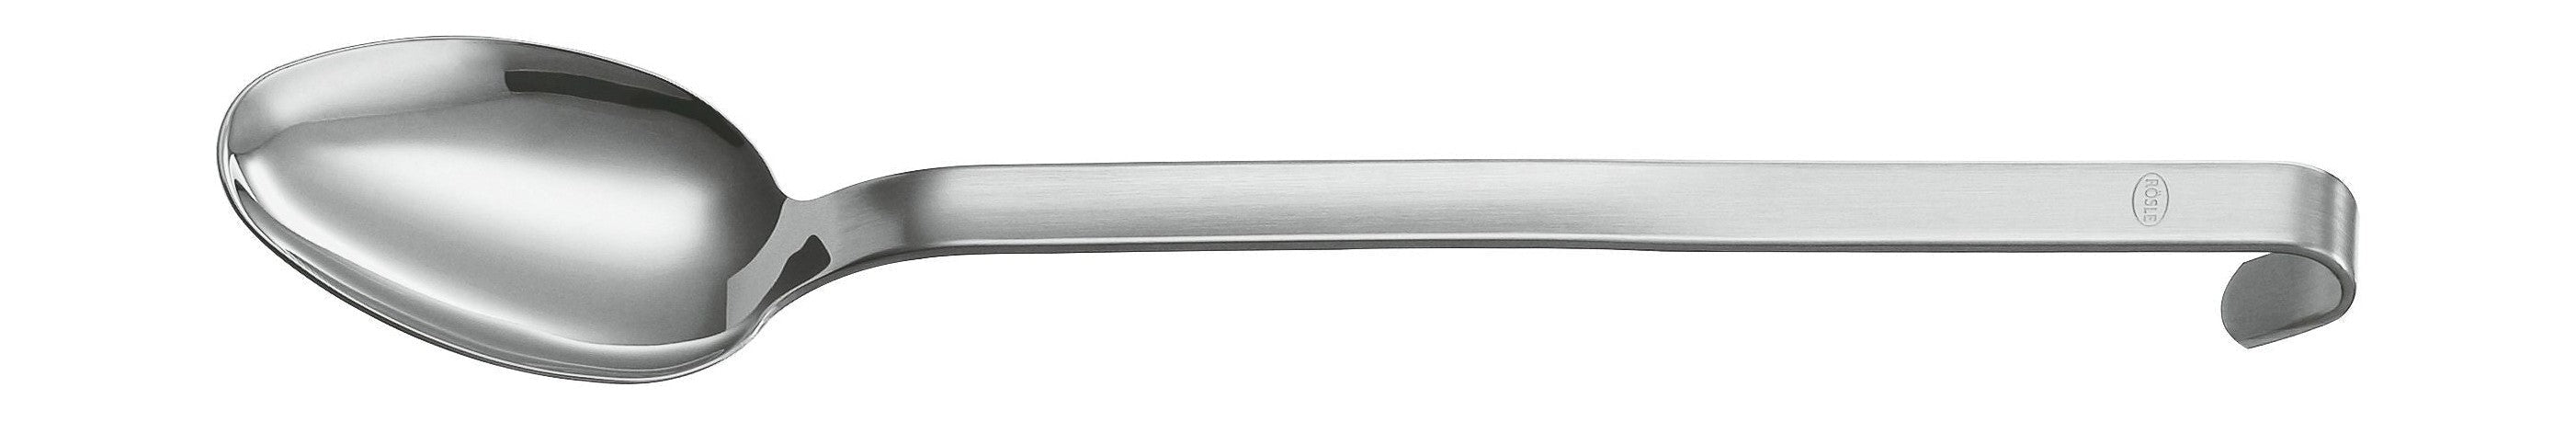 Rösle Hook Basting Spoon/Batter Spoon 31.5 Cm